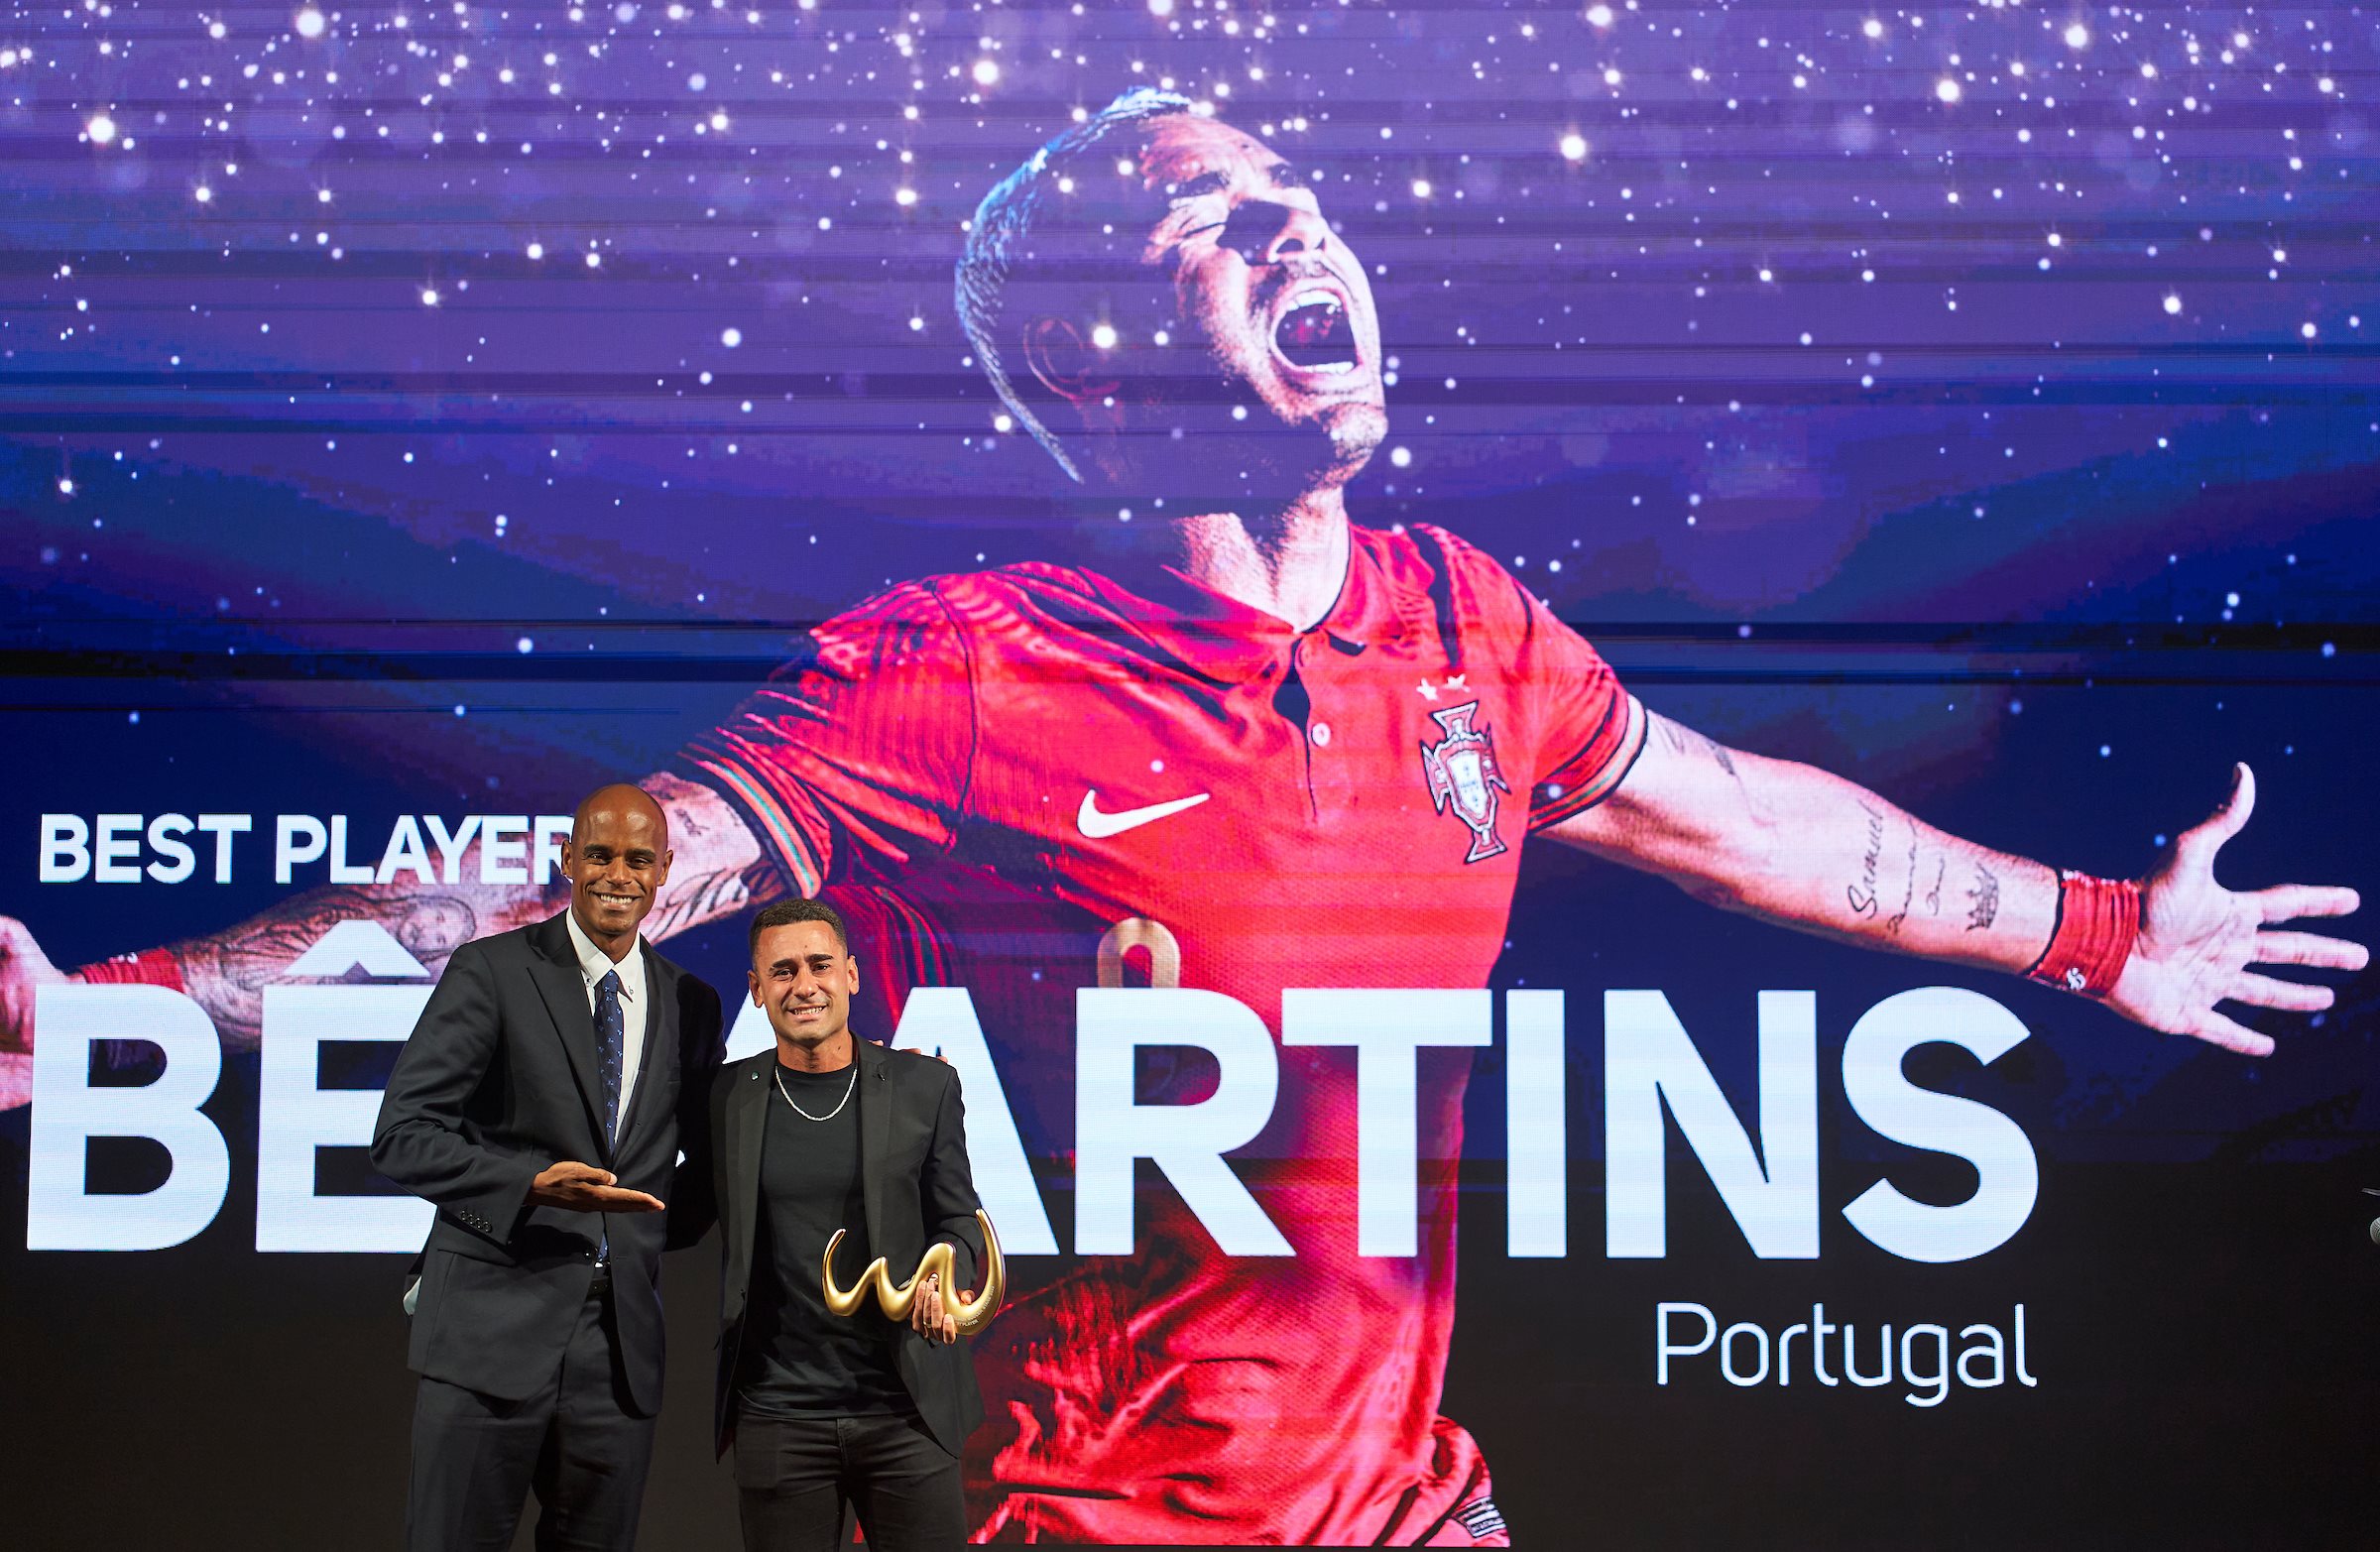 Bê Martins eleito o melhor jogador do Mundo - Futebol de Praia